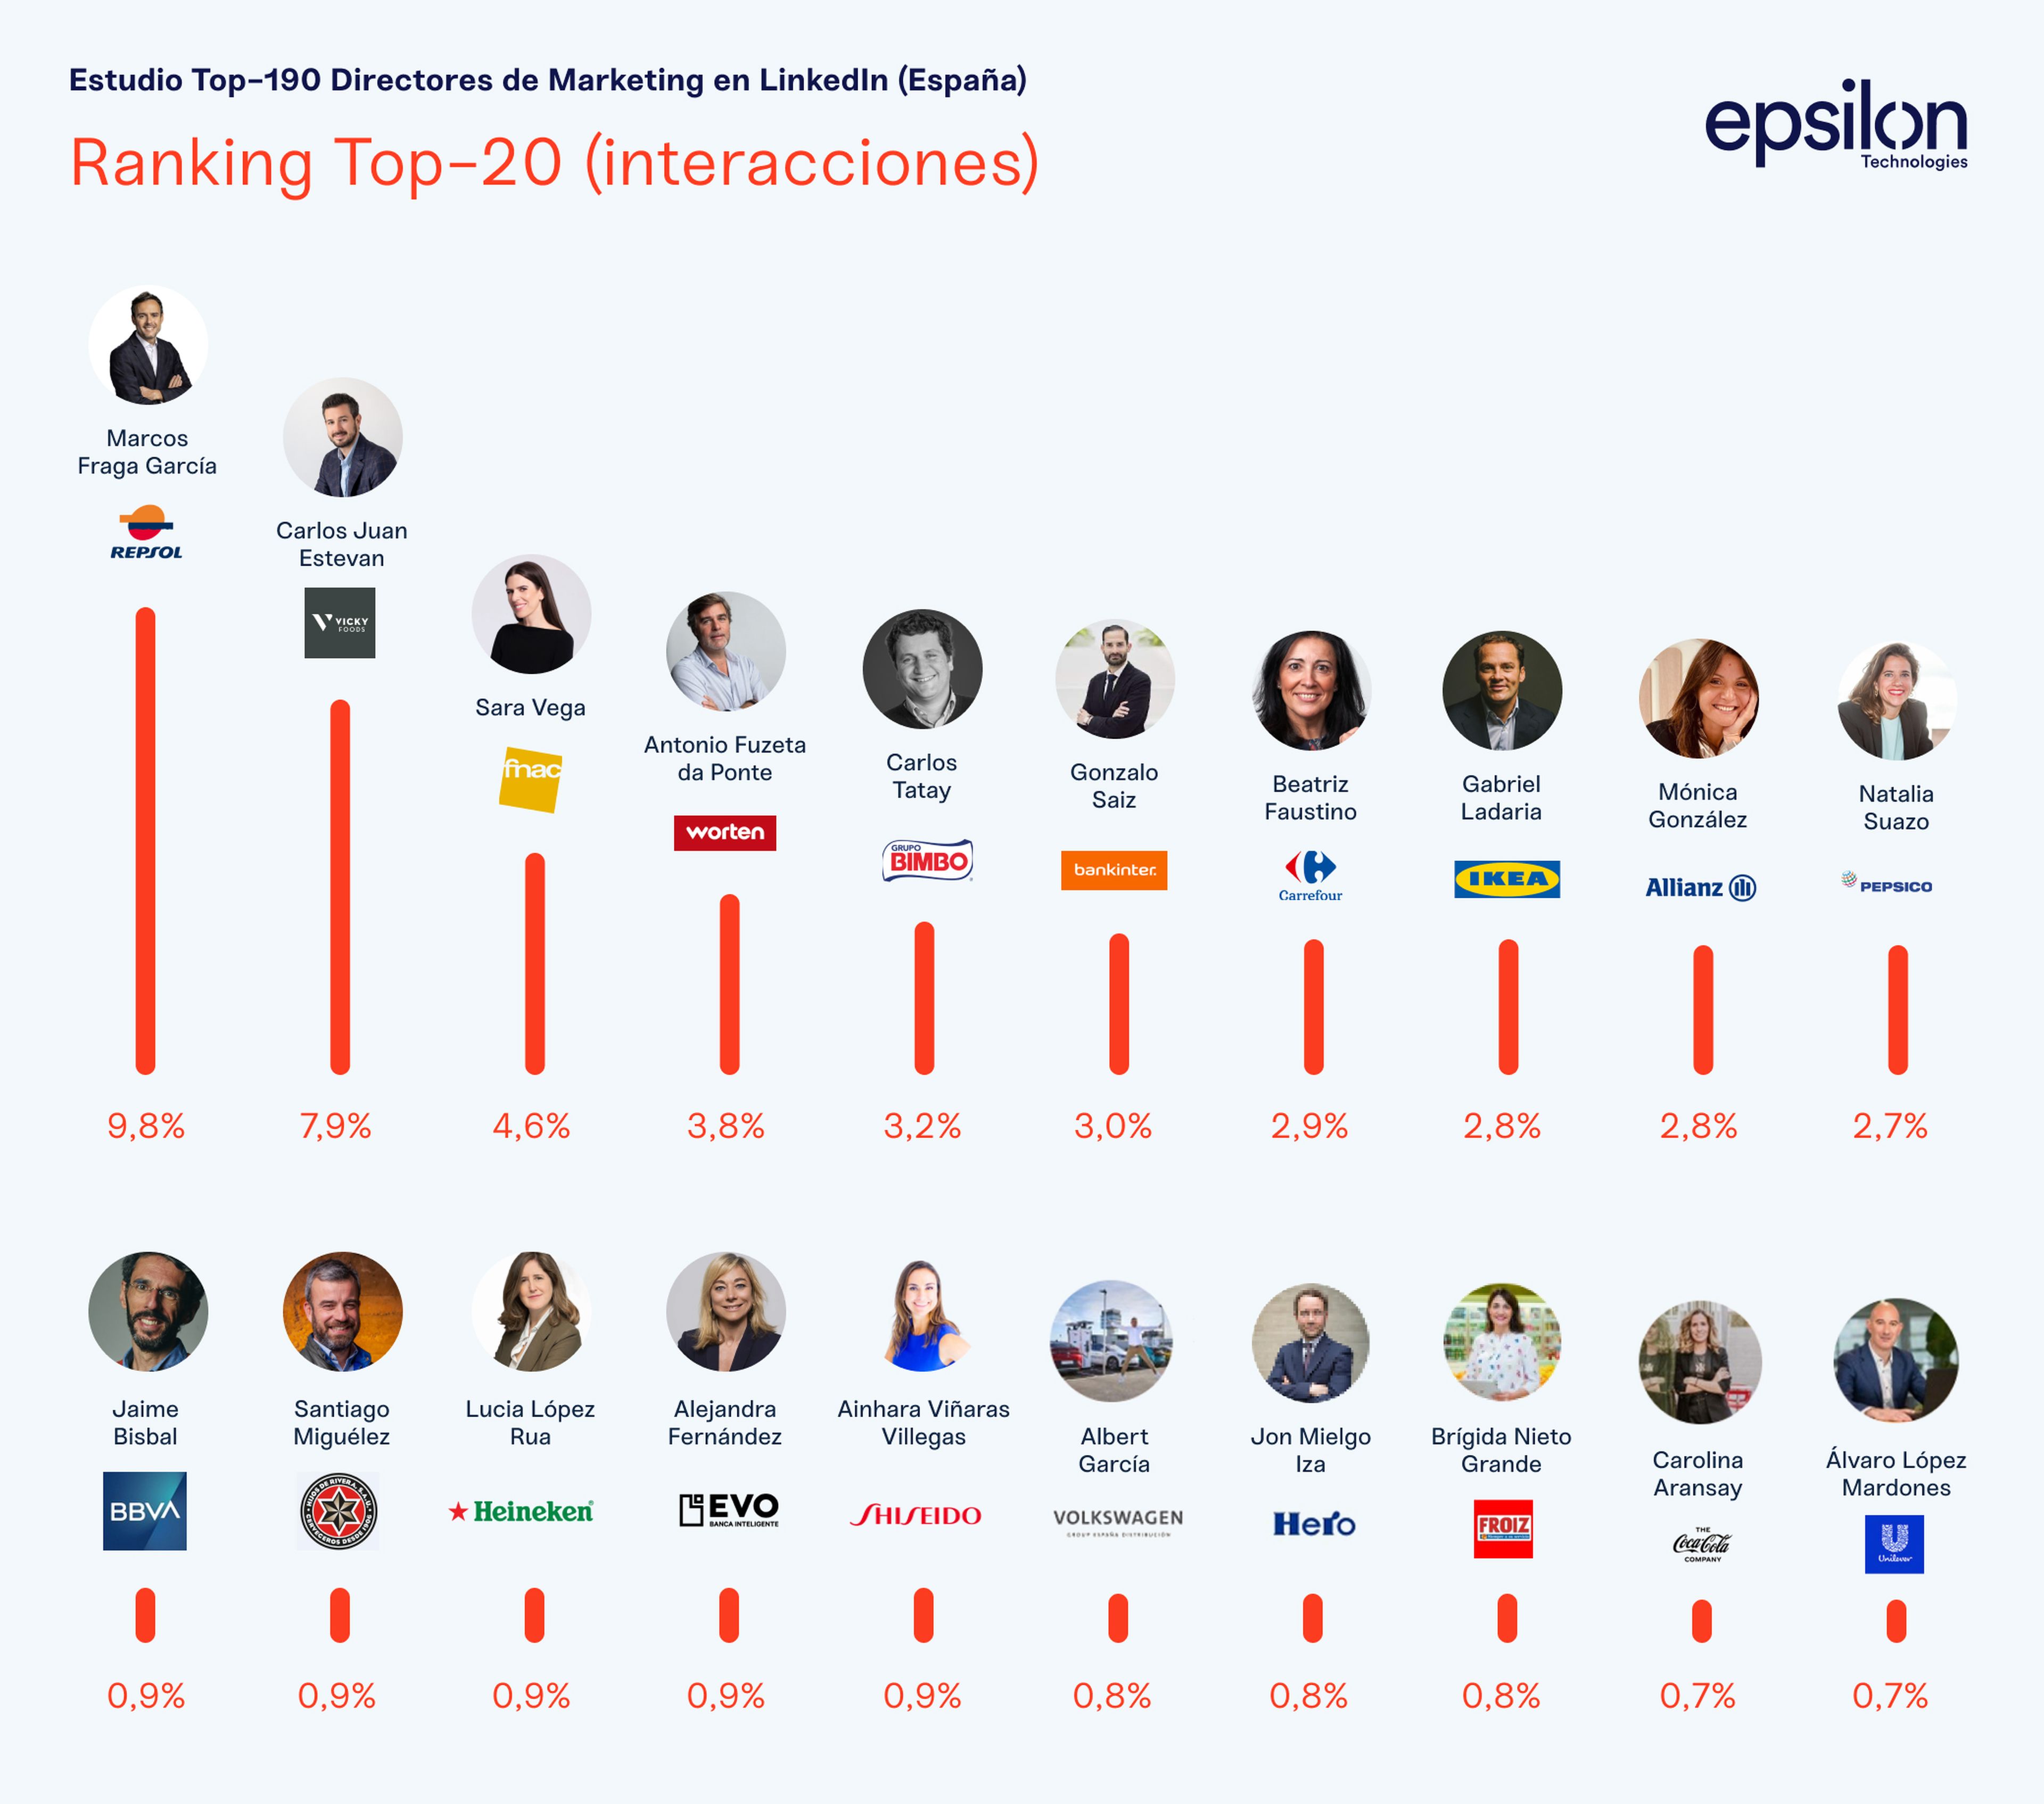 Top 20 CMO por número de interacciones en LinkedIn, según el estudio de Epsilon.